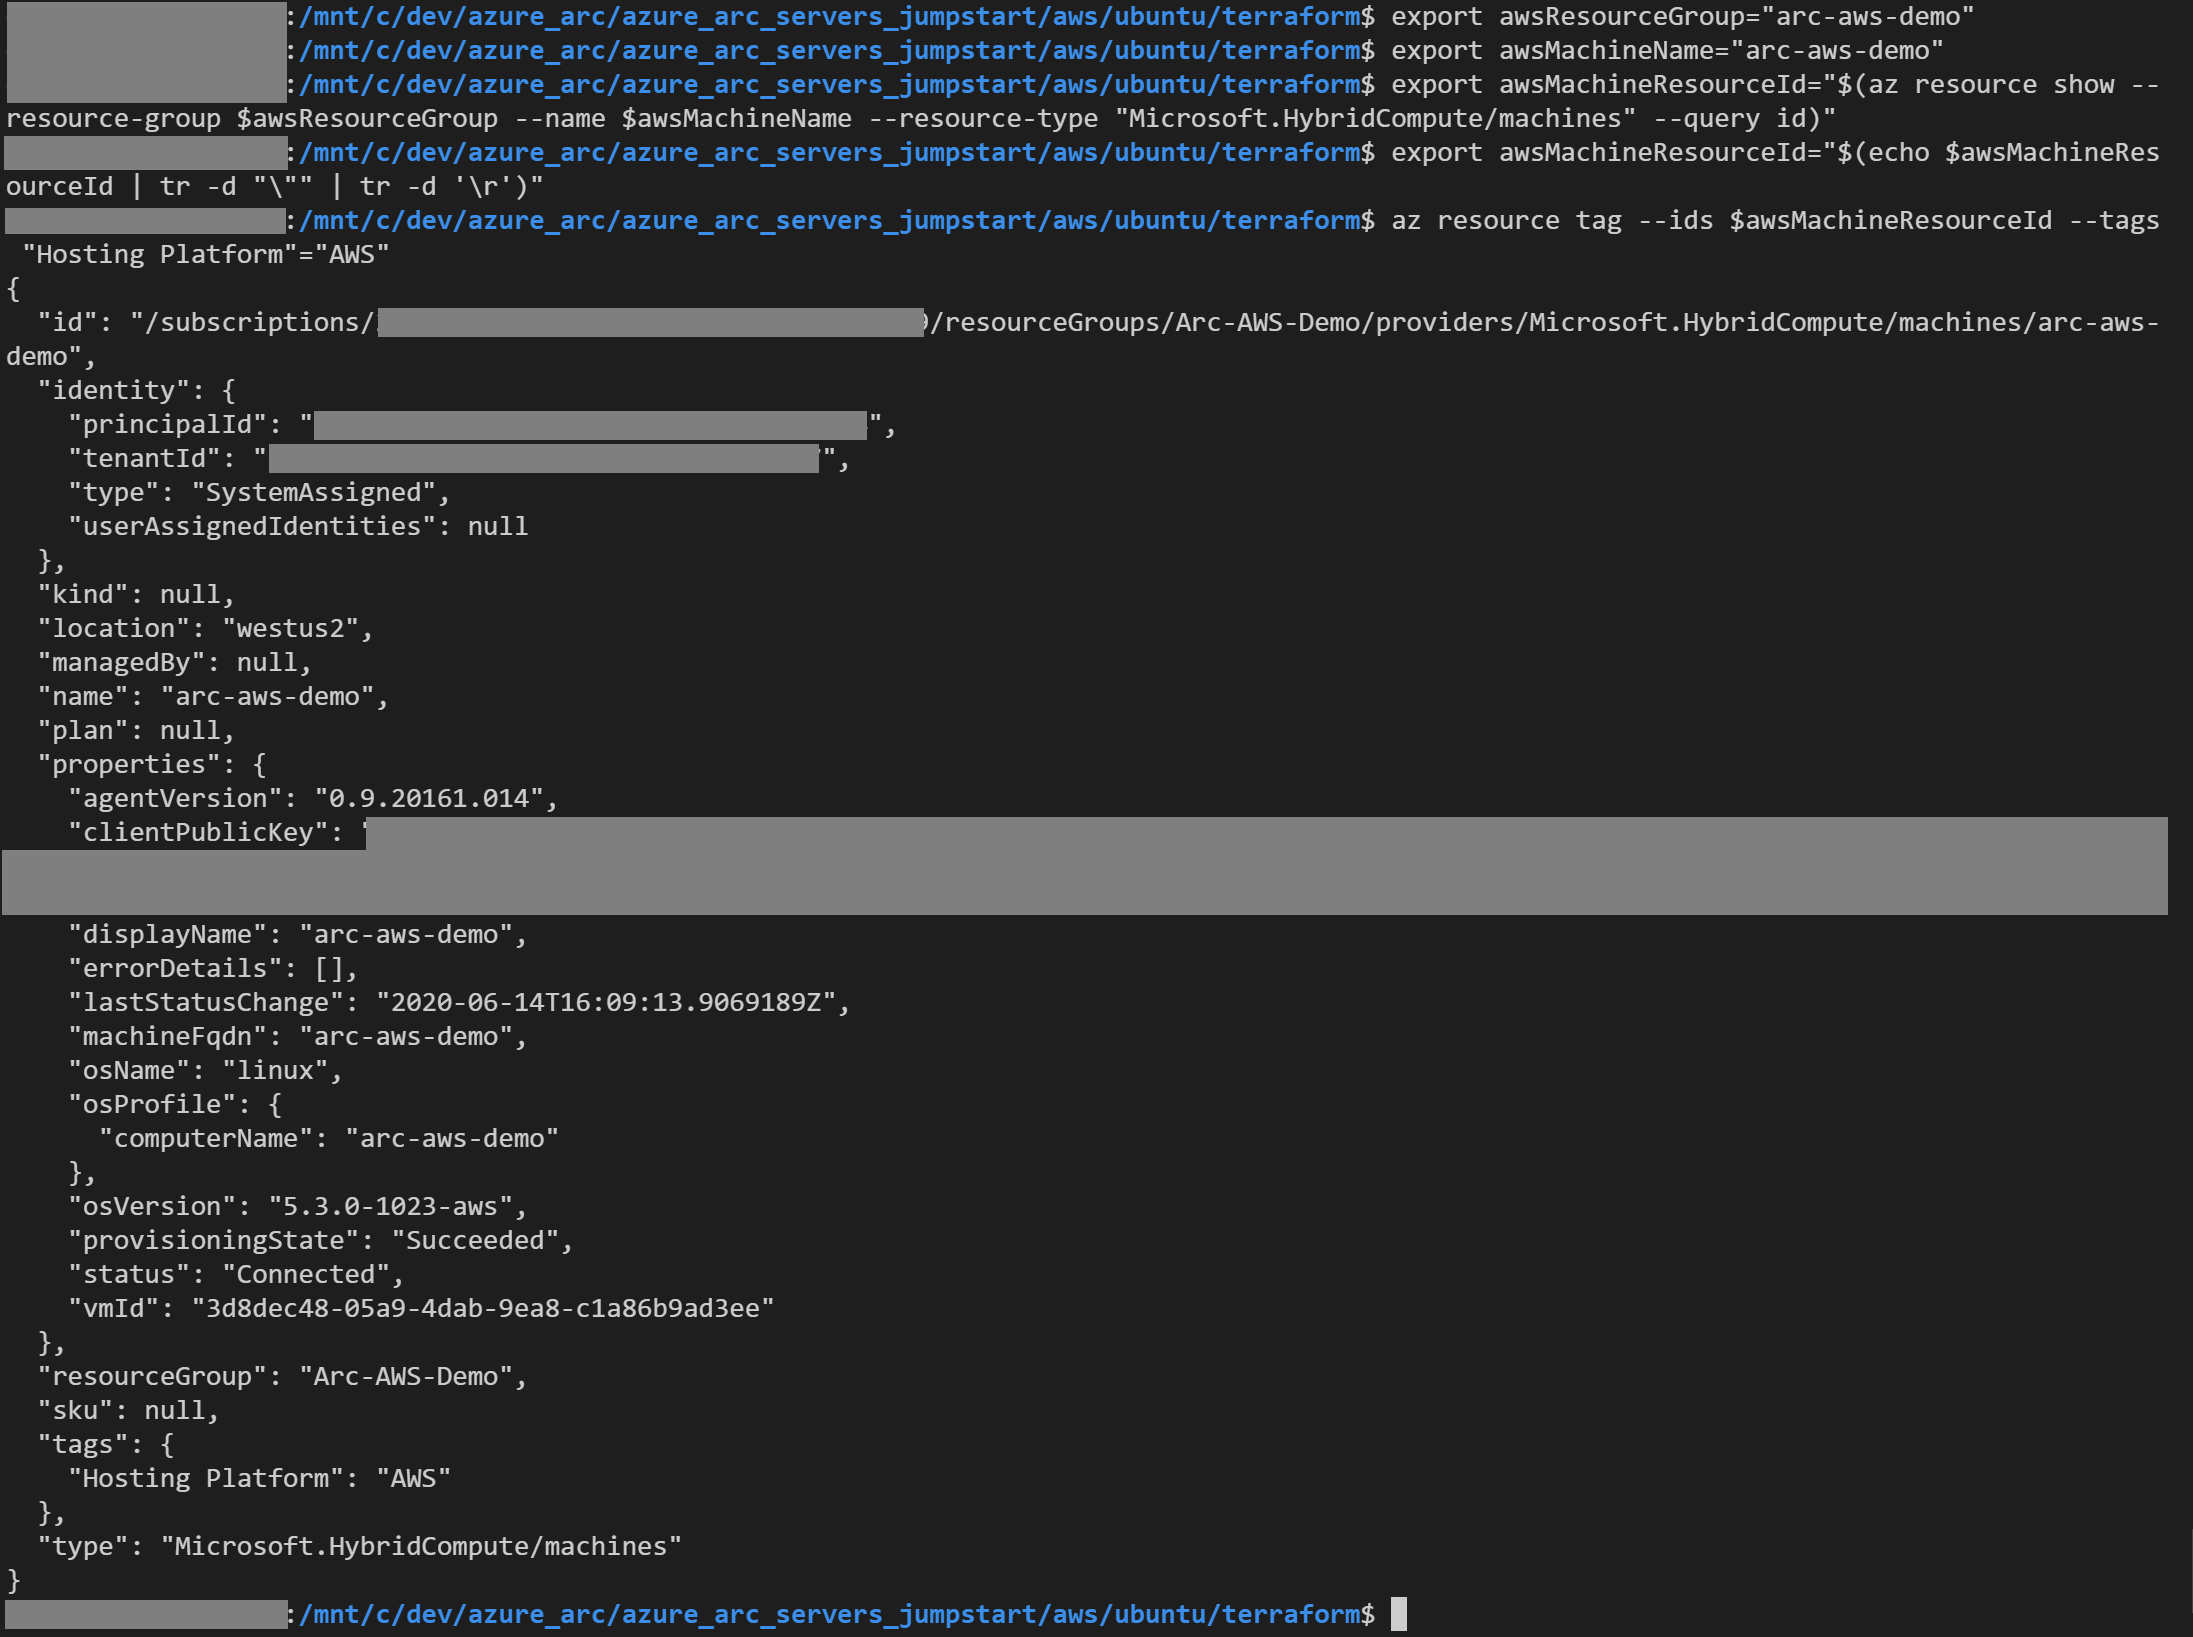 Screenshot di un output del comando az resource tag.